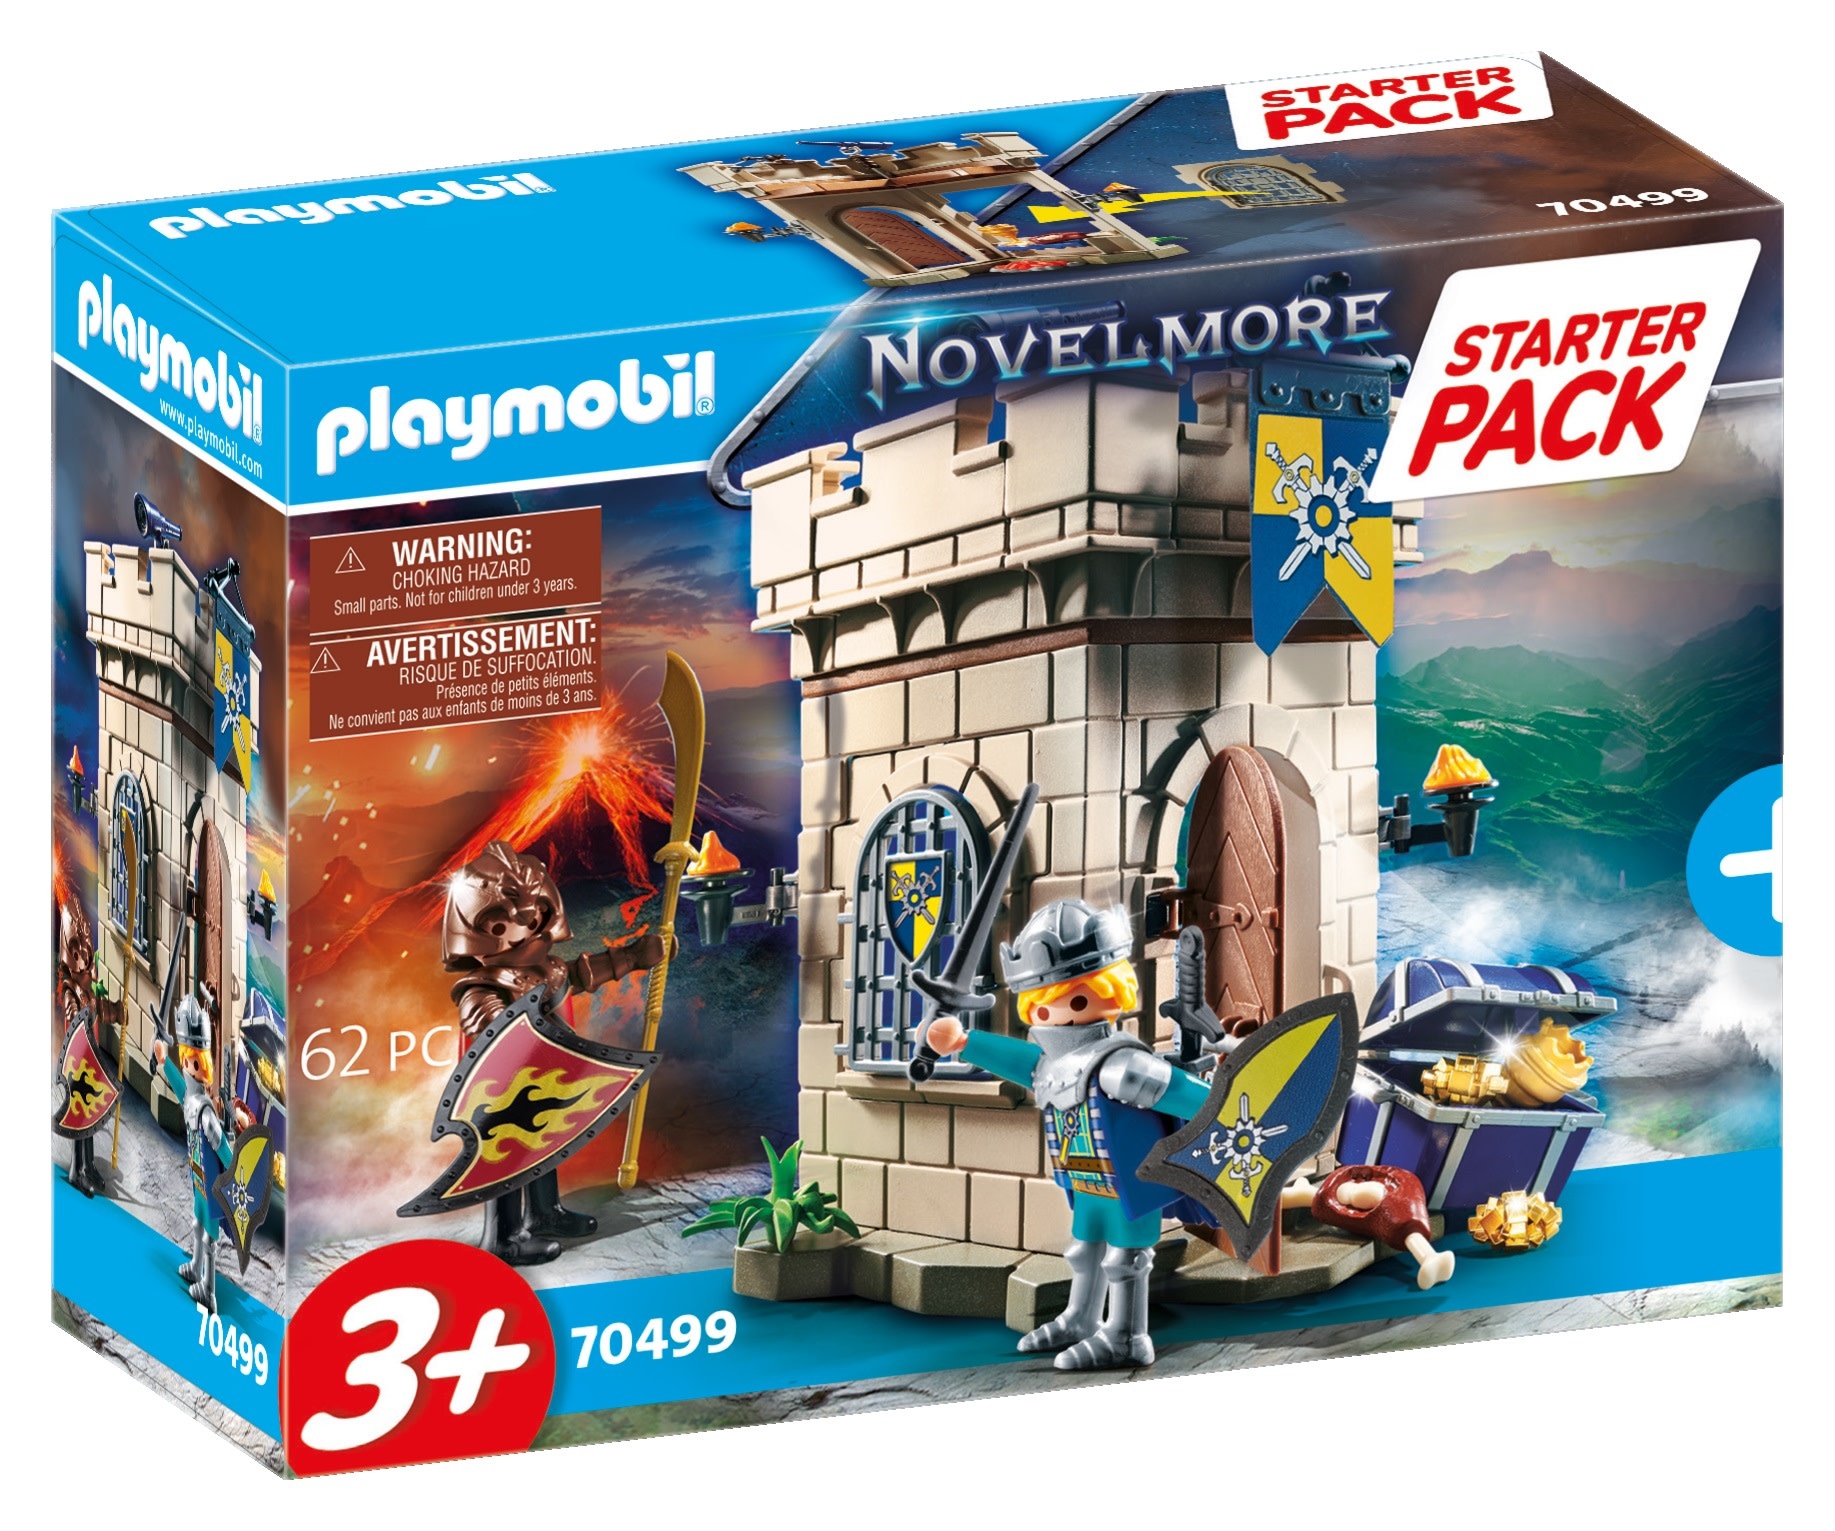 Playmobil Playmobil Novelmore 70499 – Starter Pack Donjon Novelmore